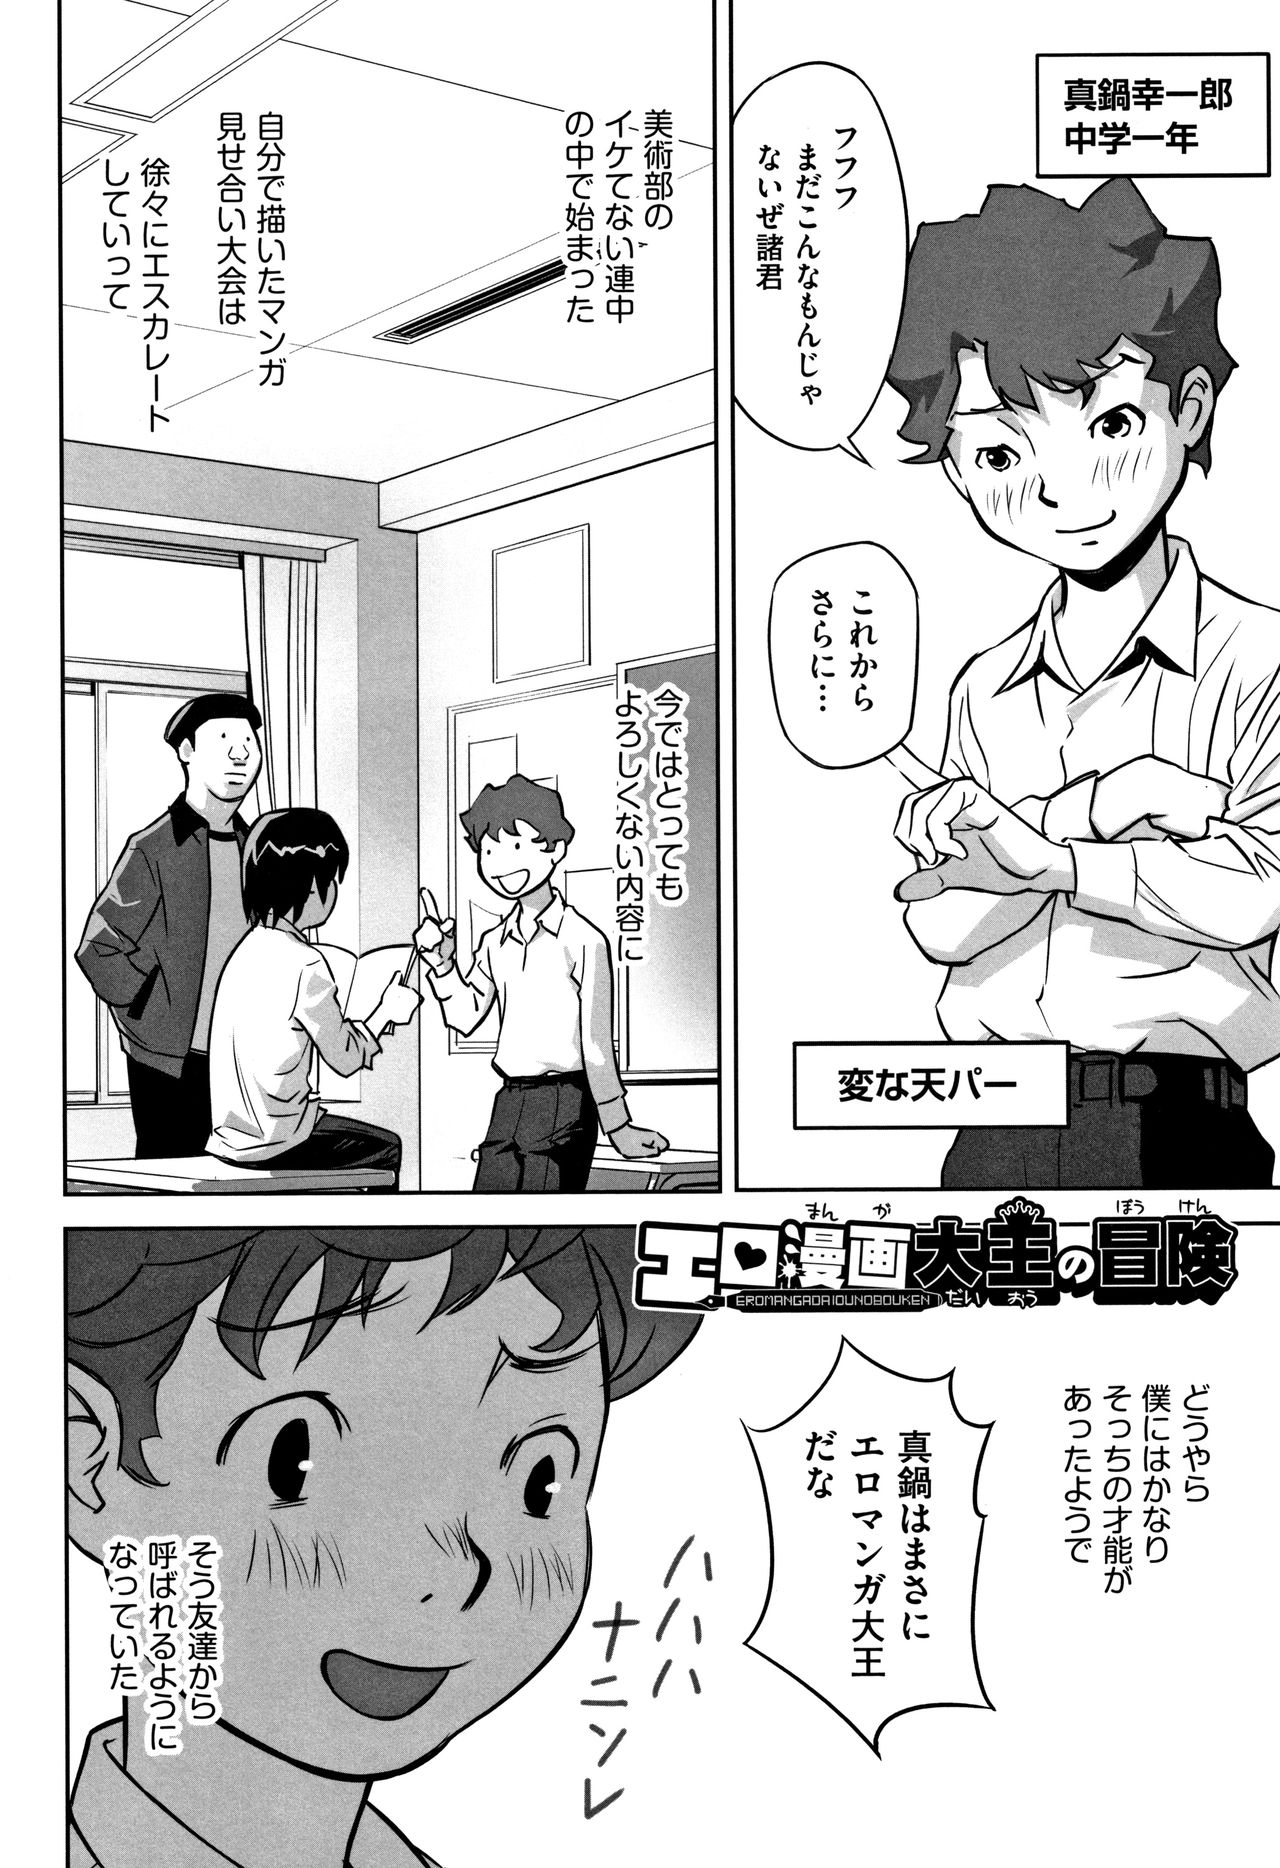 [Hanainu] Otokonoko wa Soko no Kouzou ga Shiritai noda page 7 full